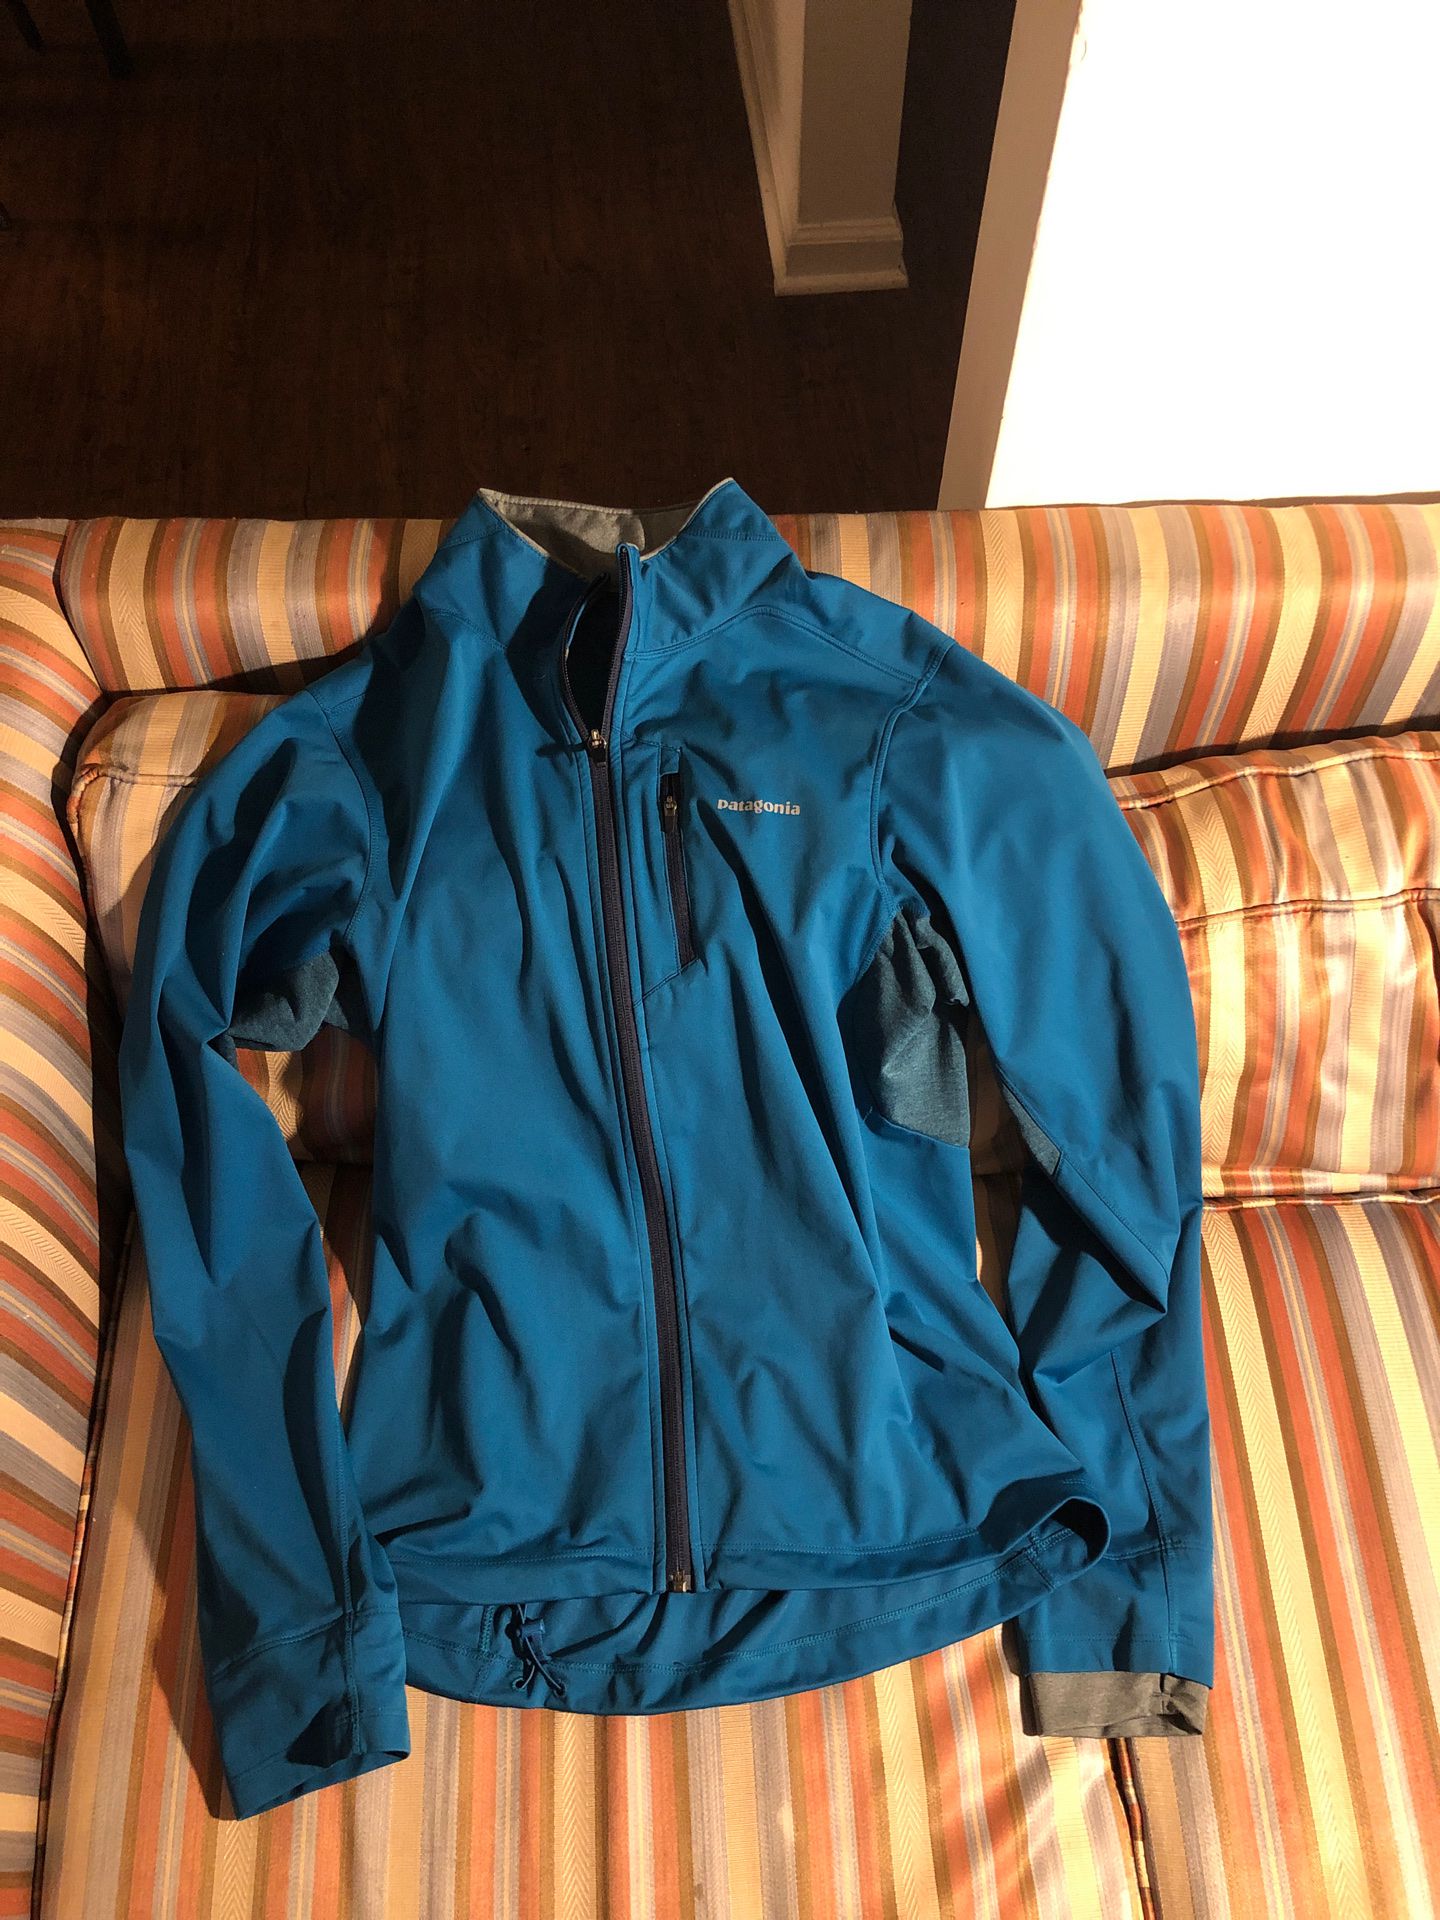 Patagonia full zip jacket